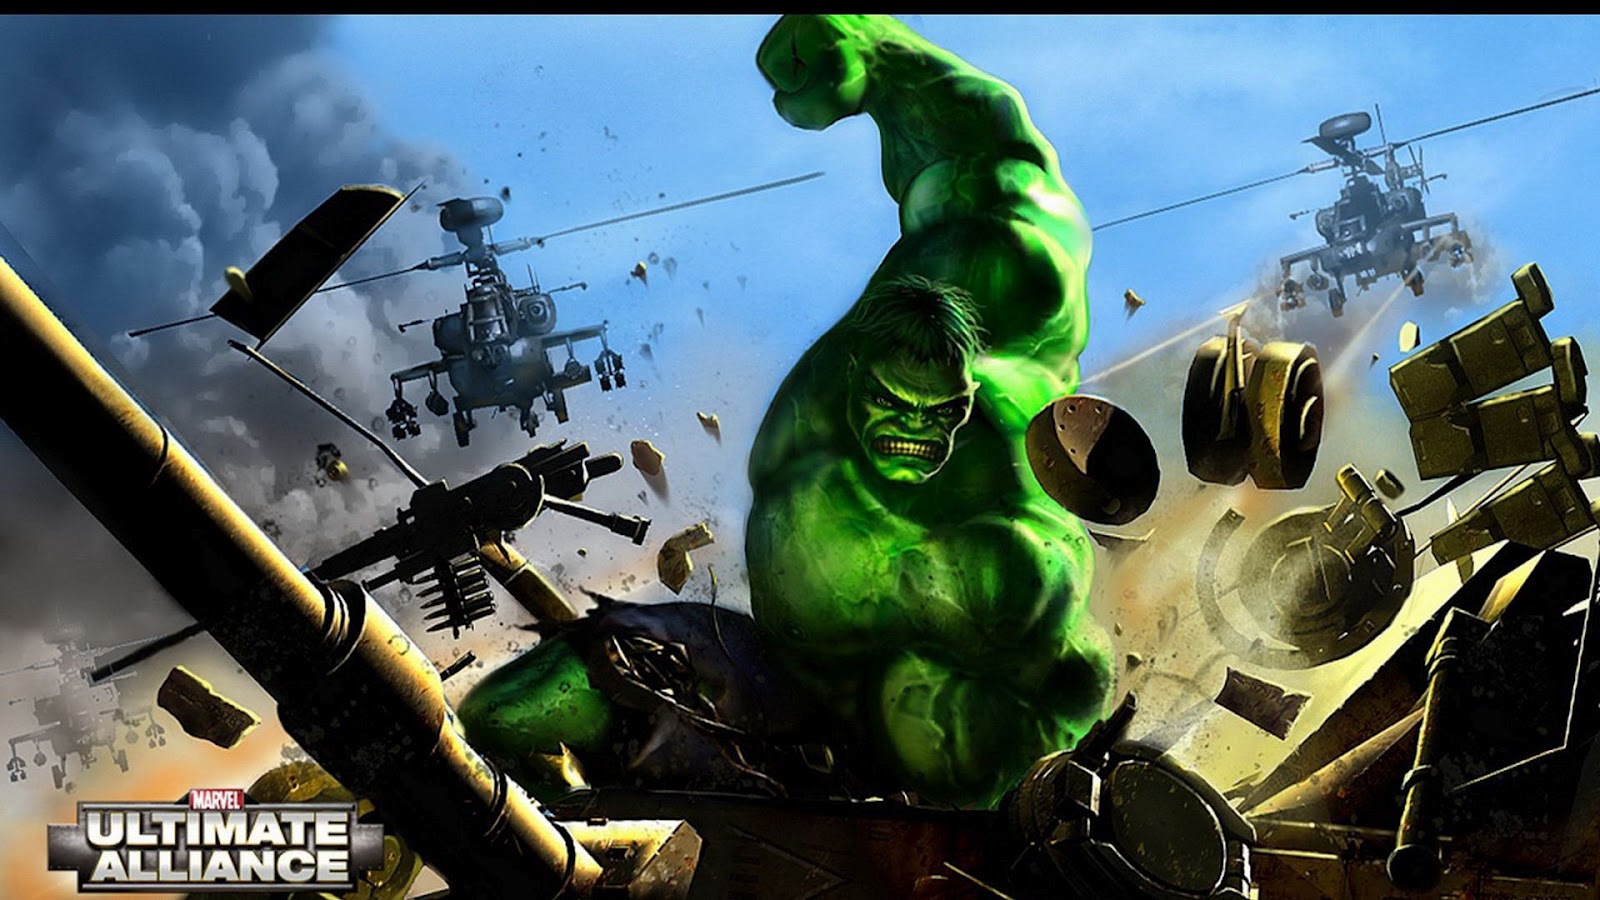 The Incredible Hulk Wallpaper